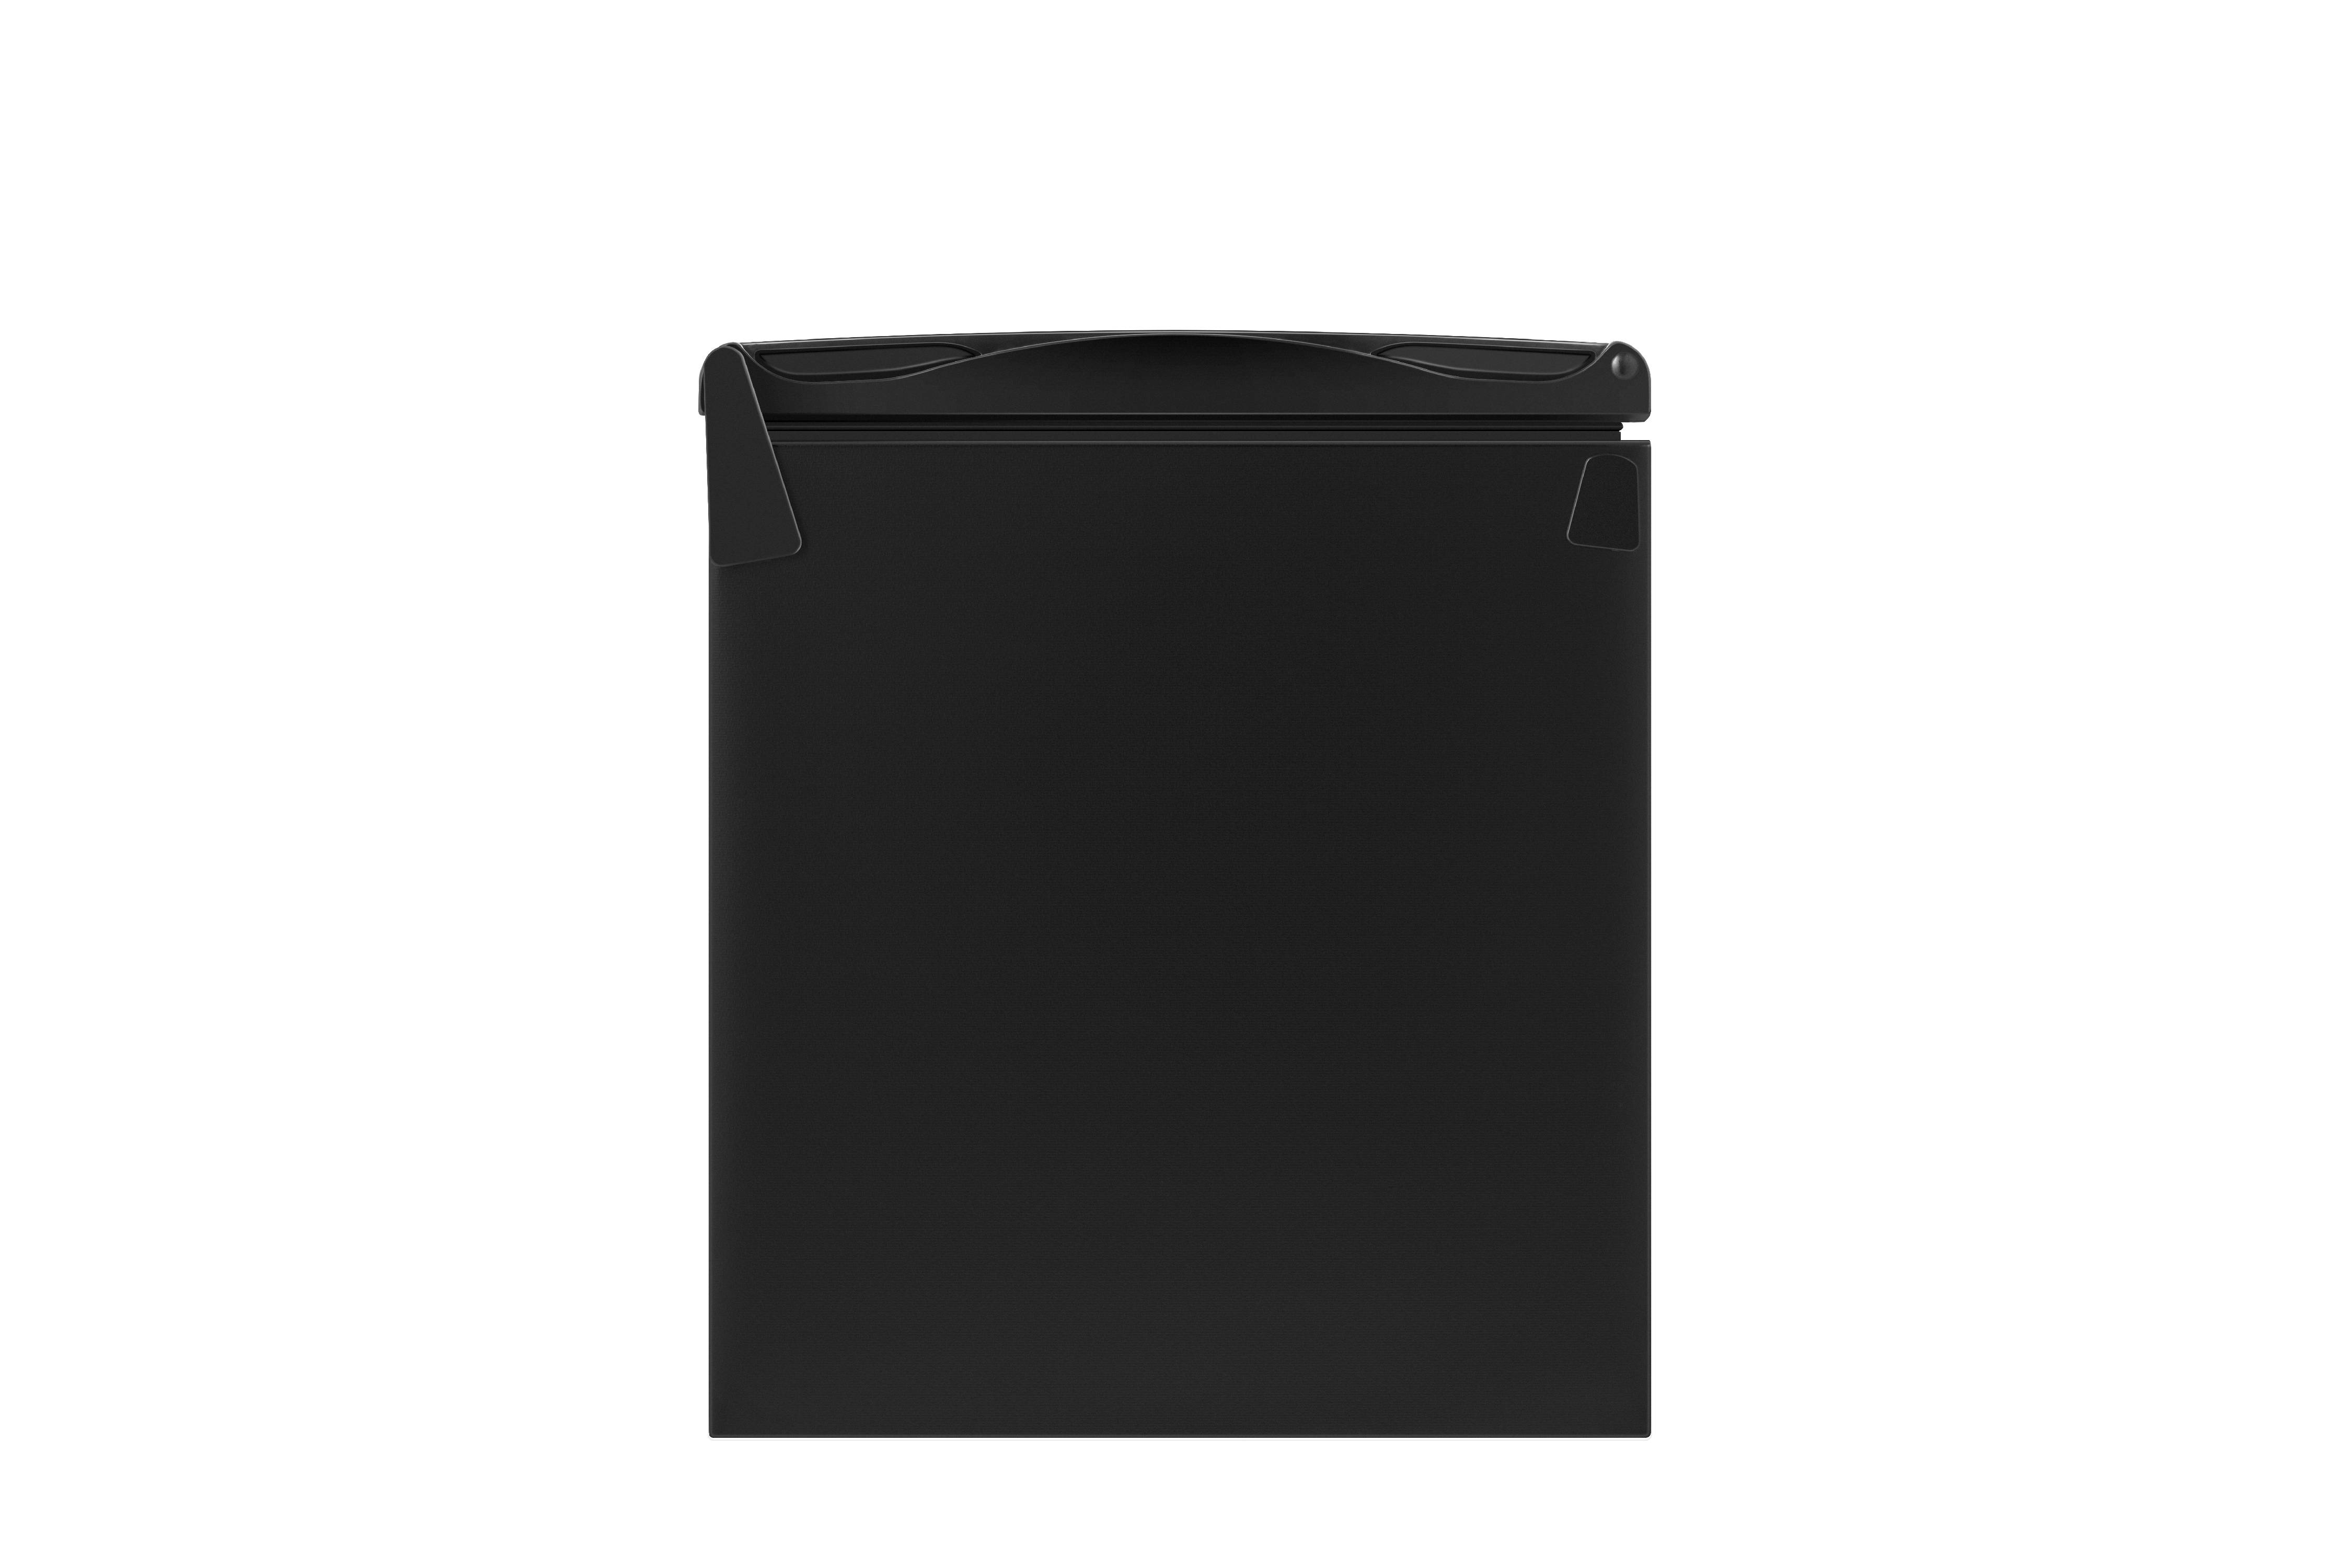 Hisense 2.7 Cu Ft Single Door Mini Fridge RR27D6ABE, Black - image 5 of 12